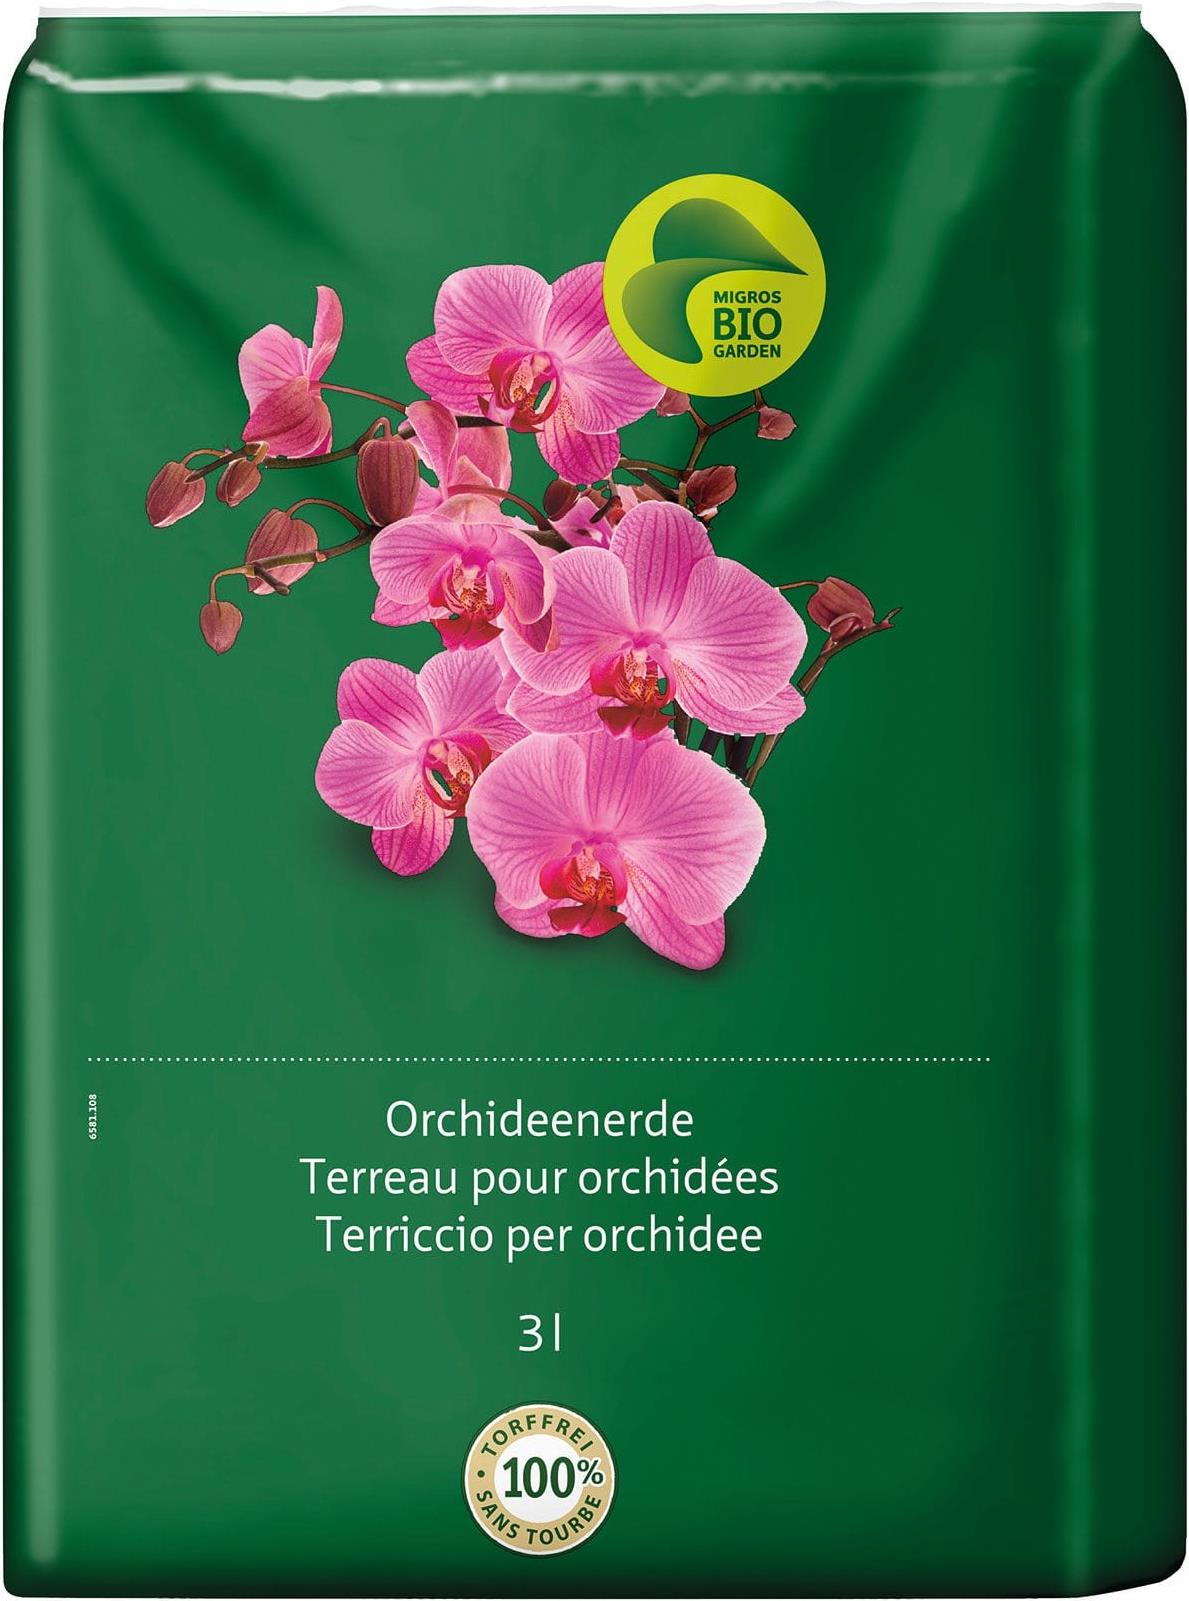 Migros-Bio Garden Orchideenerde (3 l) kaufen